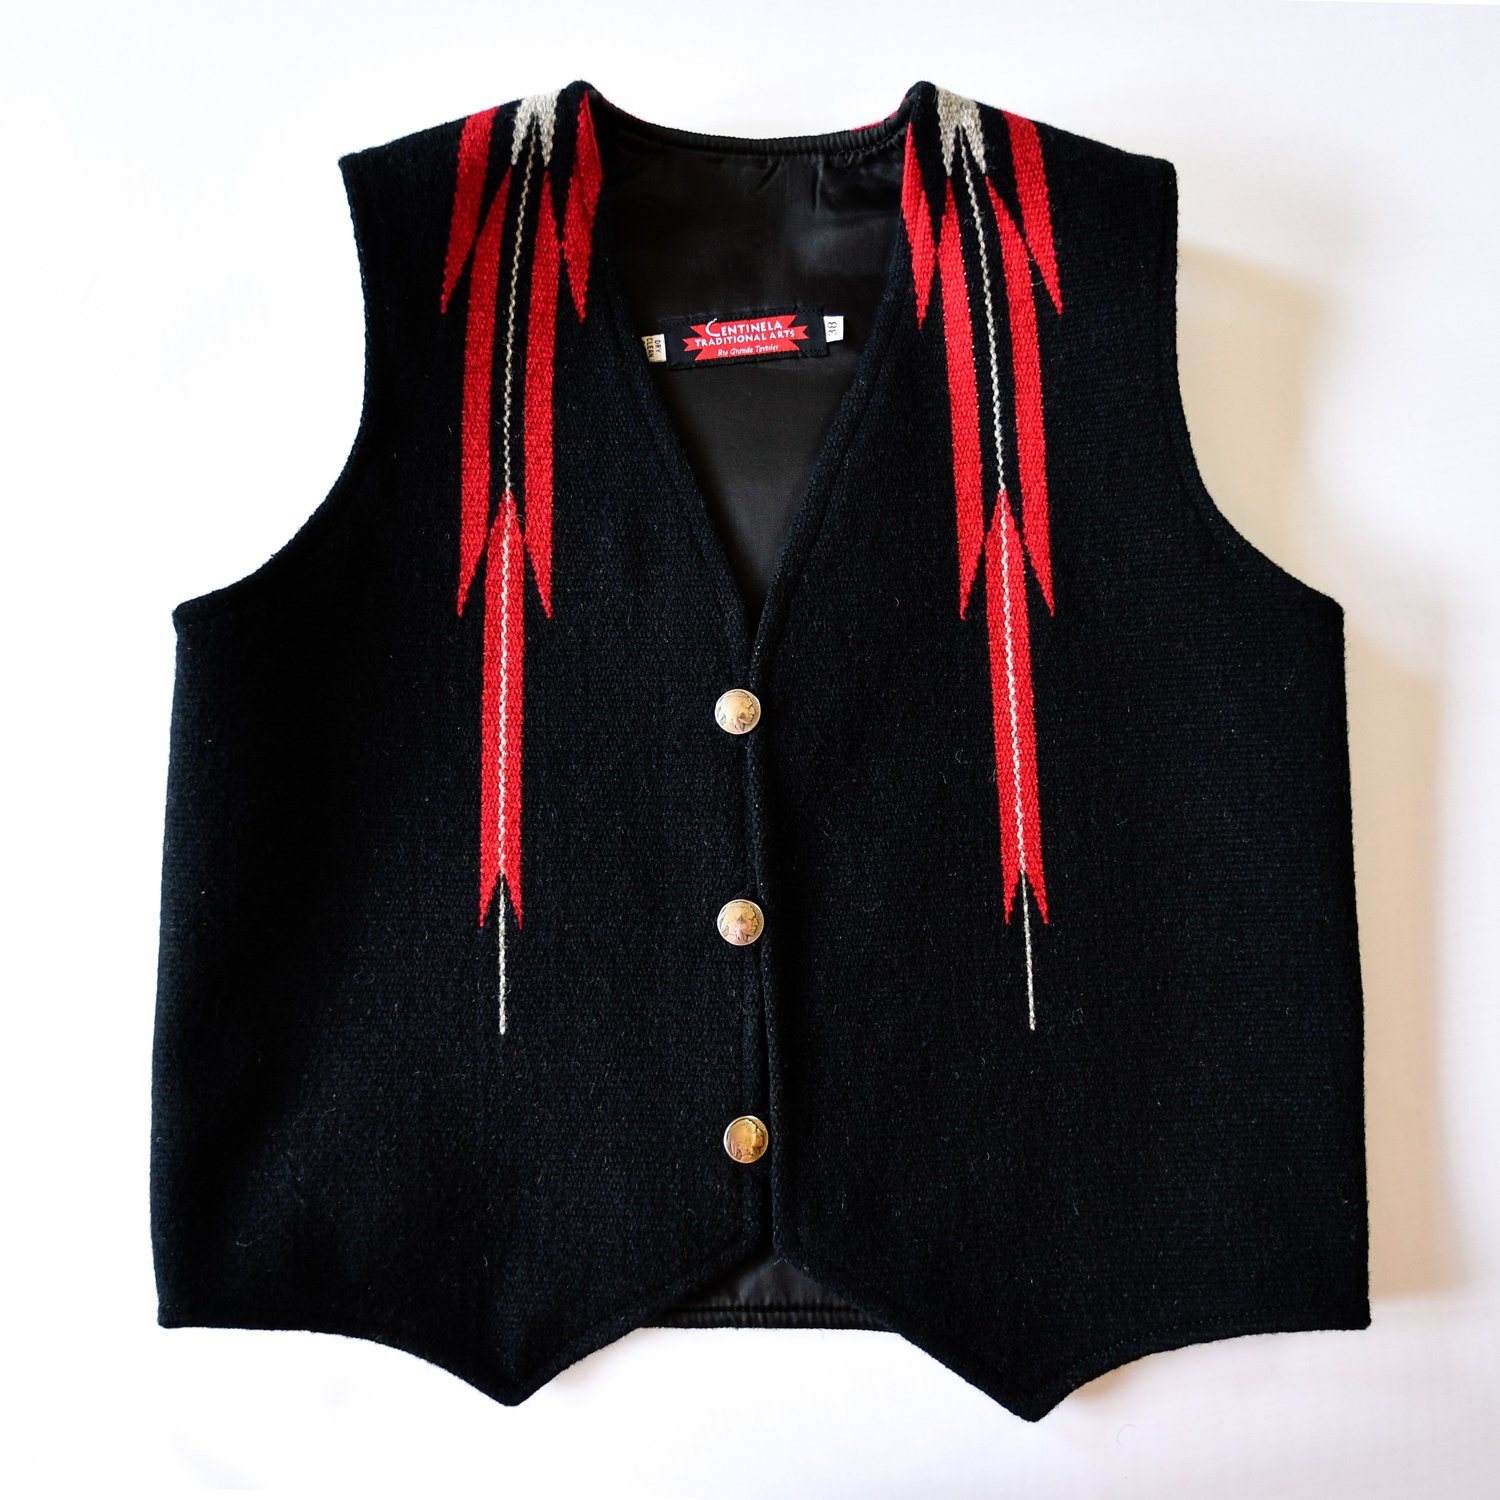 センチネラ ベスト [Centinela Vest] - Native American Jewelry 